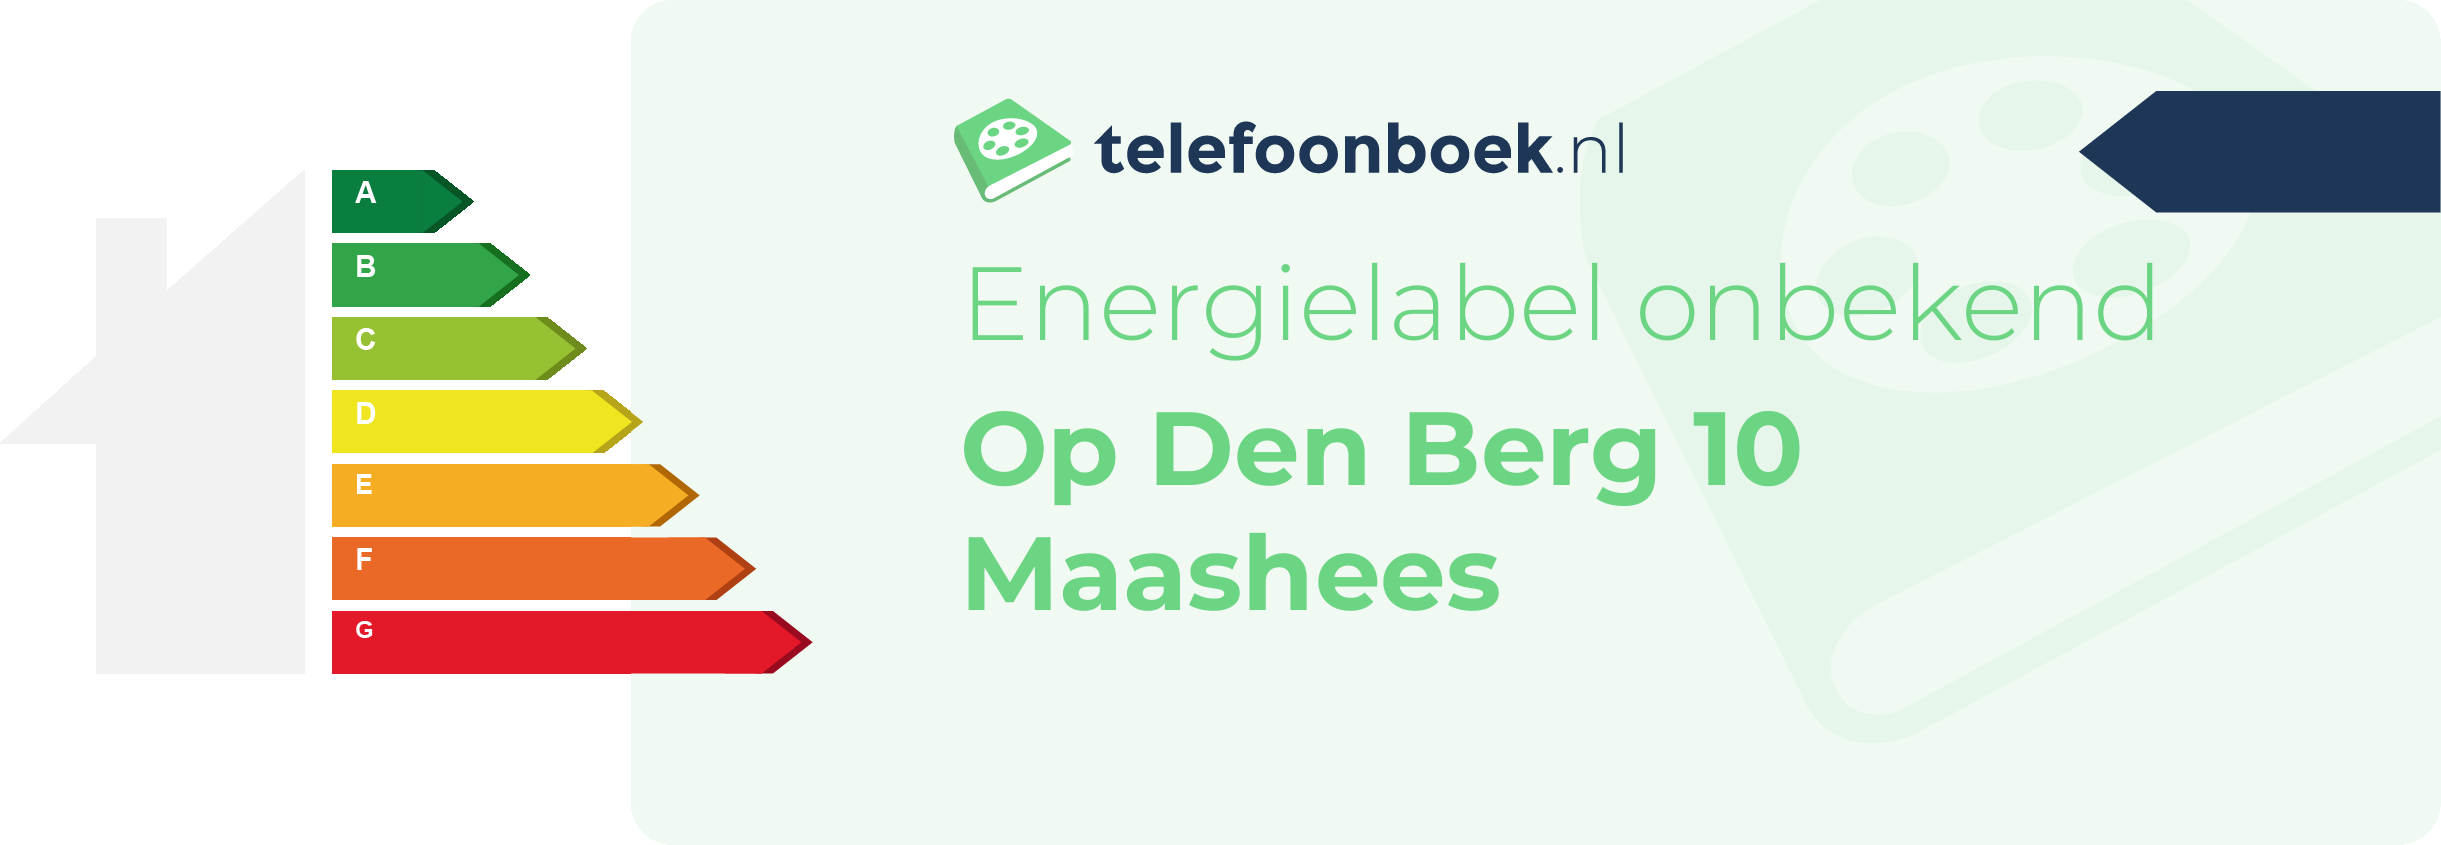 Energielabel Op Den Berg 10 Maashees